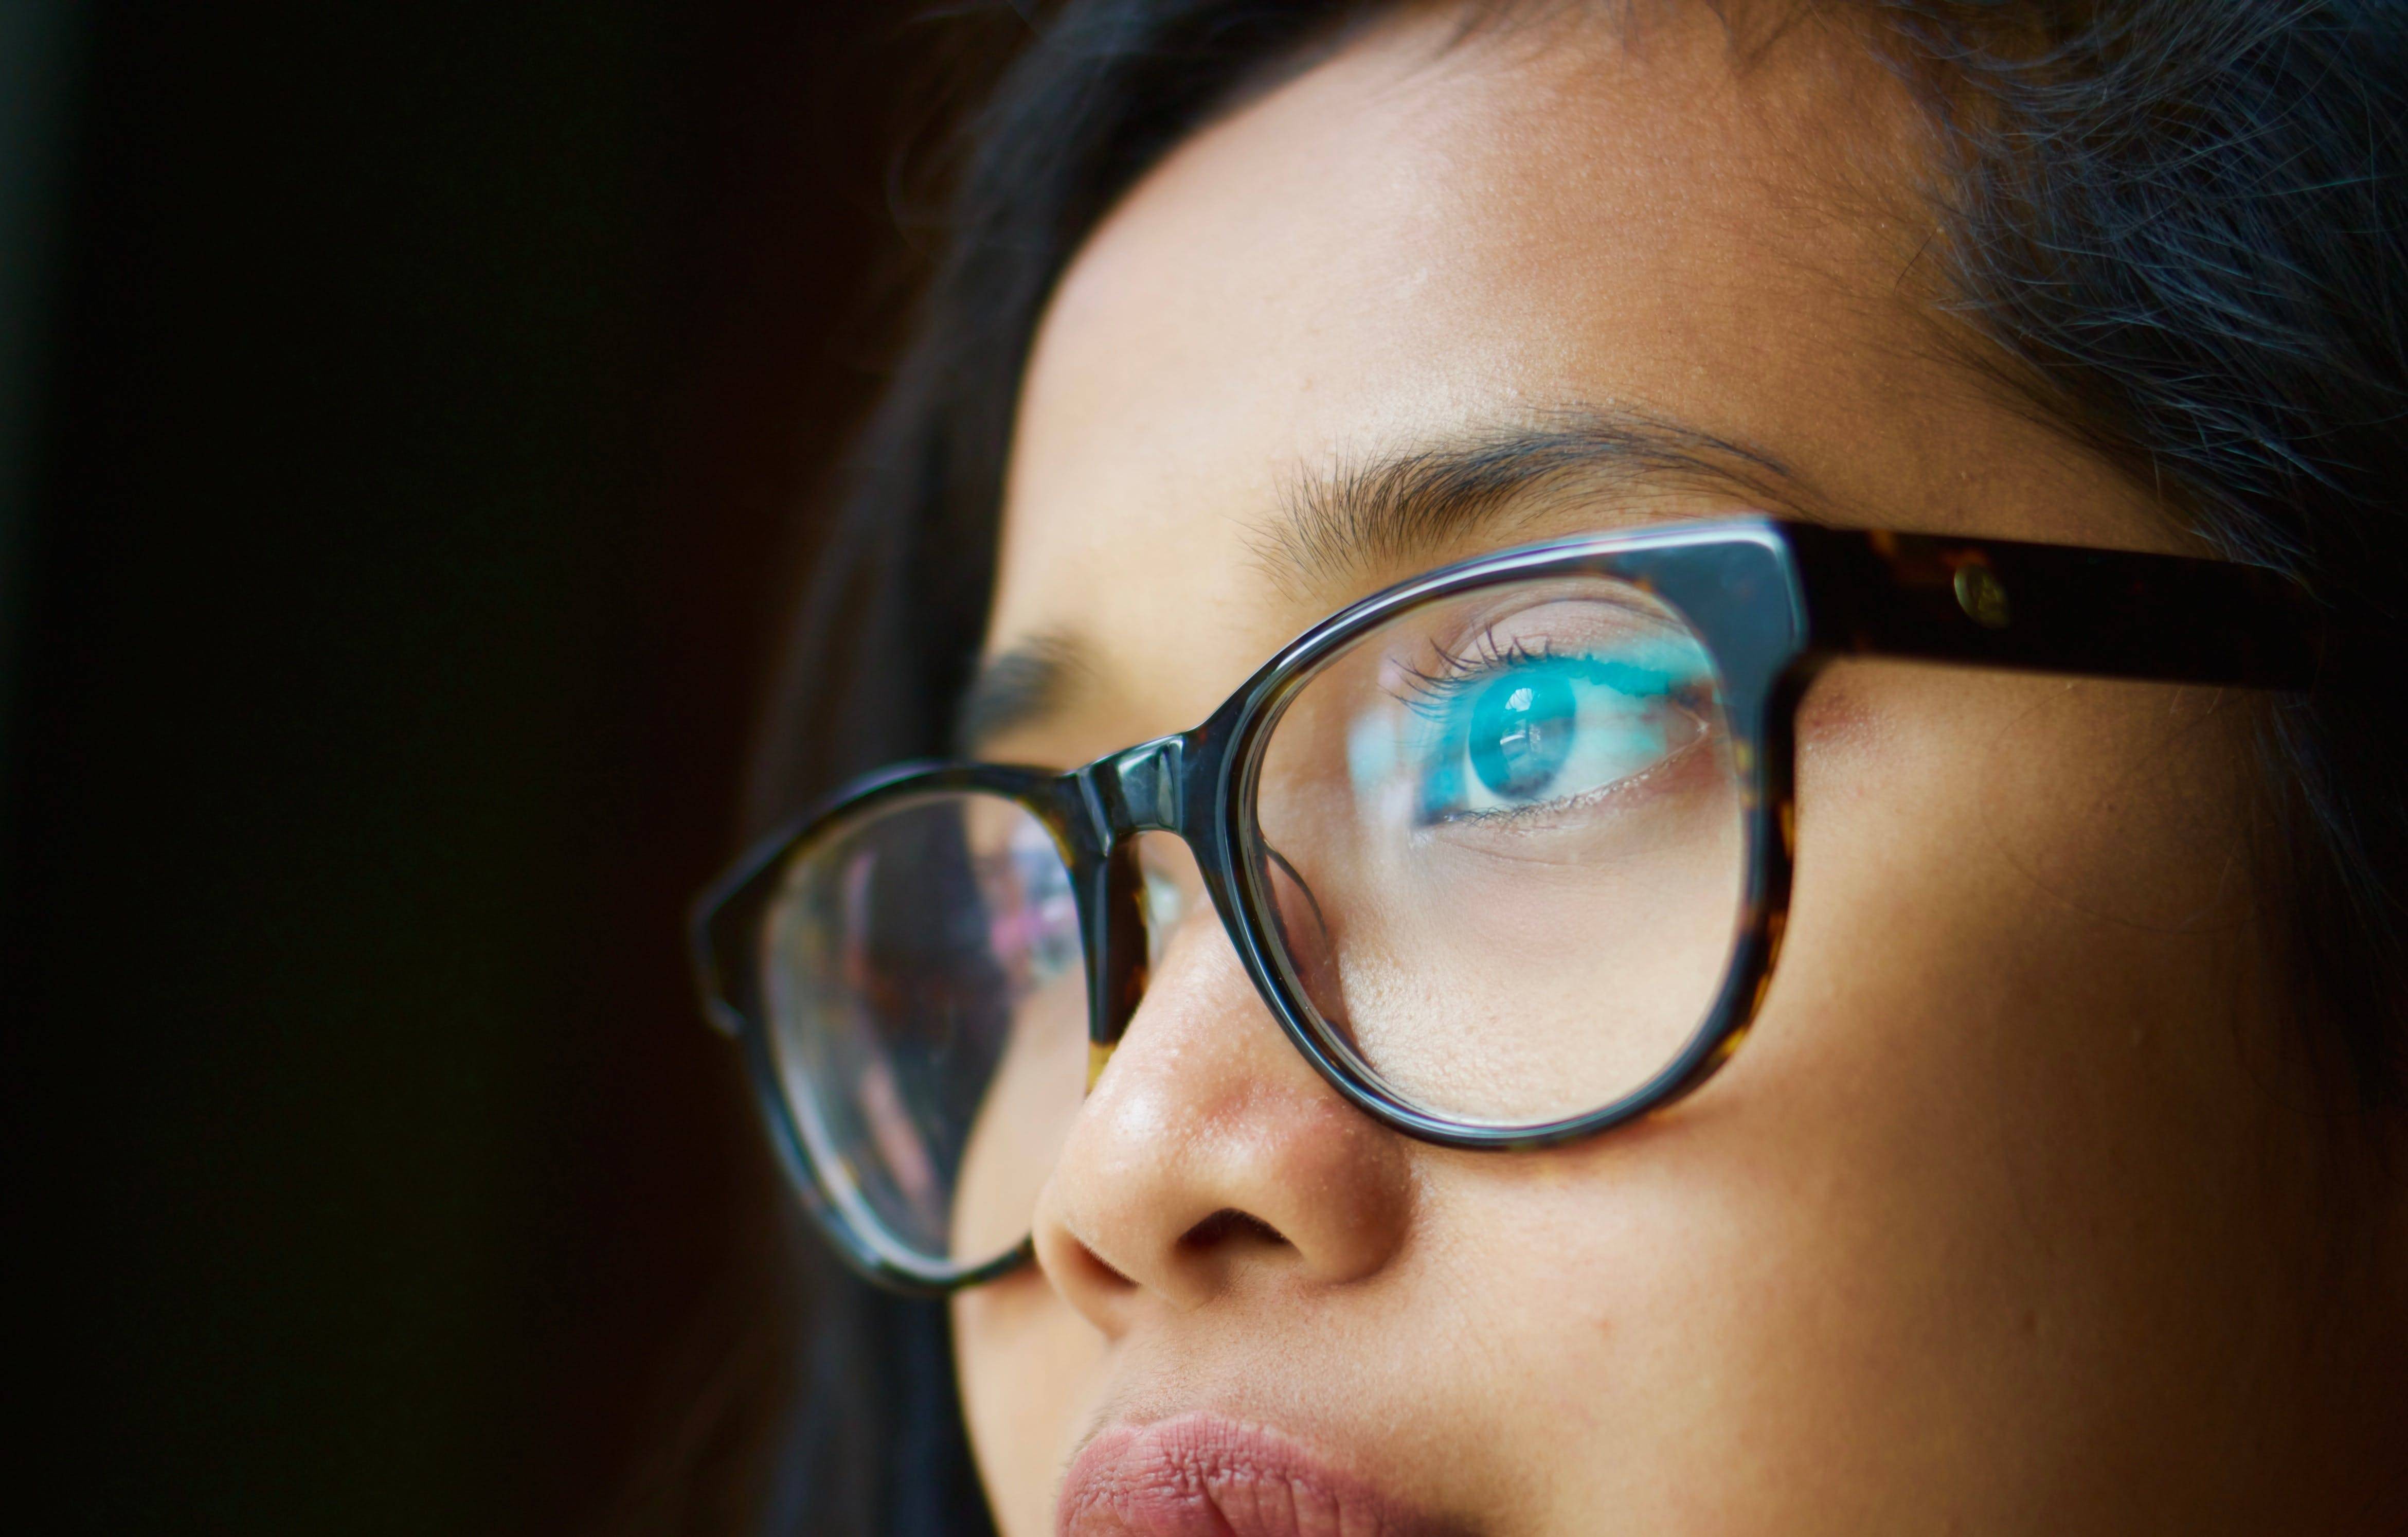 Что лучше очки или линзы: плюсы и минусы, что выбрать при близорукости, можно ли применять контактную коррекцию у ребенка